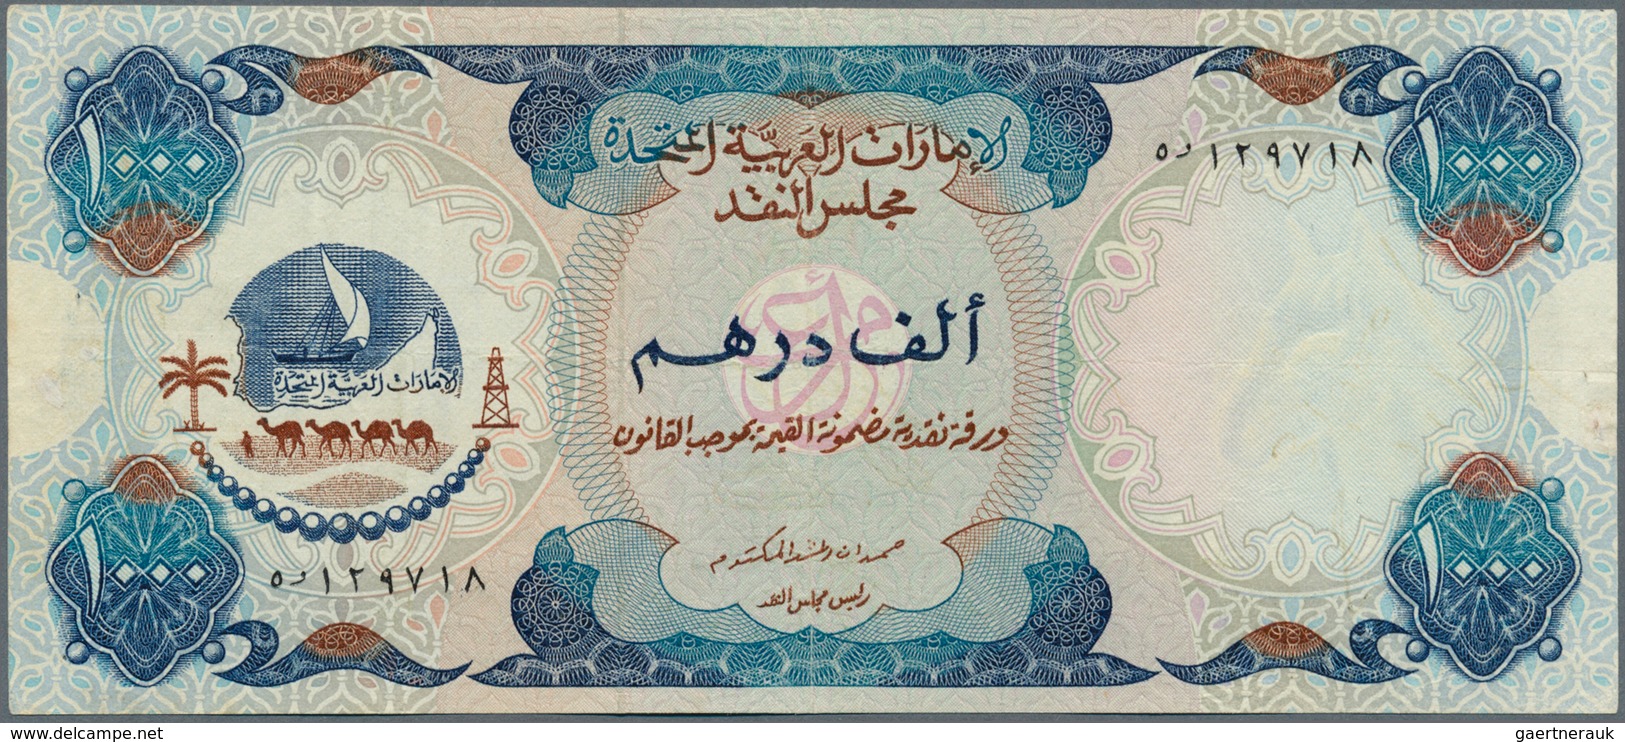 02574 United Arab Emirates / Vereinigte Arabische Emirate: Rare Note 1000 Dirhams ND(1976) P. 6, Light Fol - Ver. Arab. Emirate